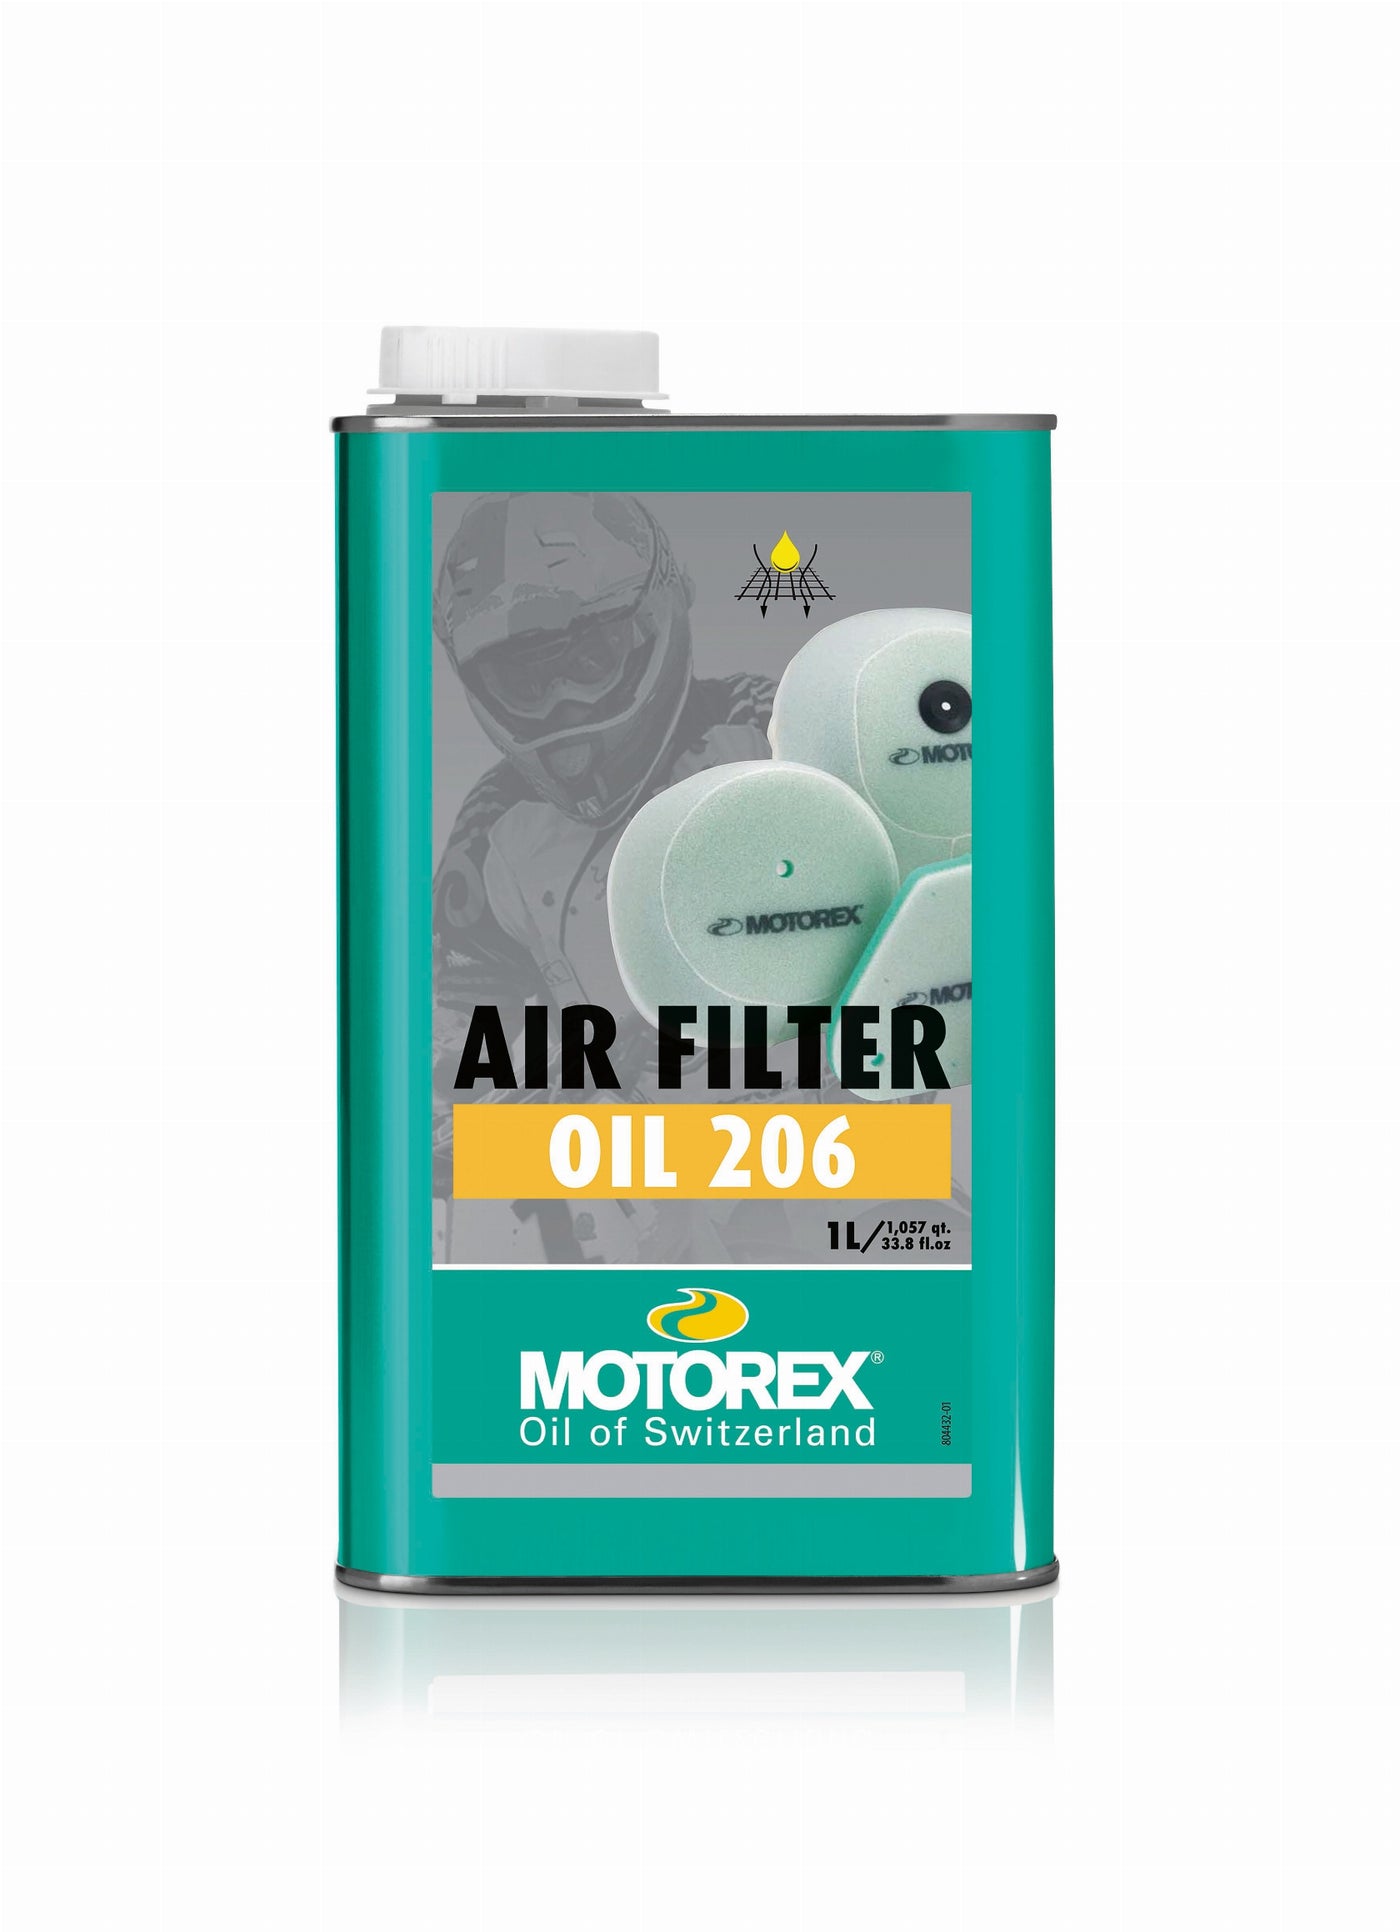 Luftfilterolje, Motorex. 206 (For svampfilter)